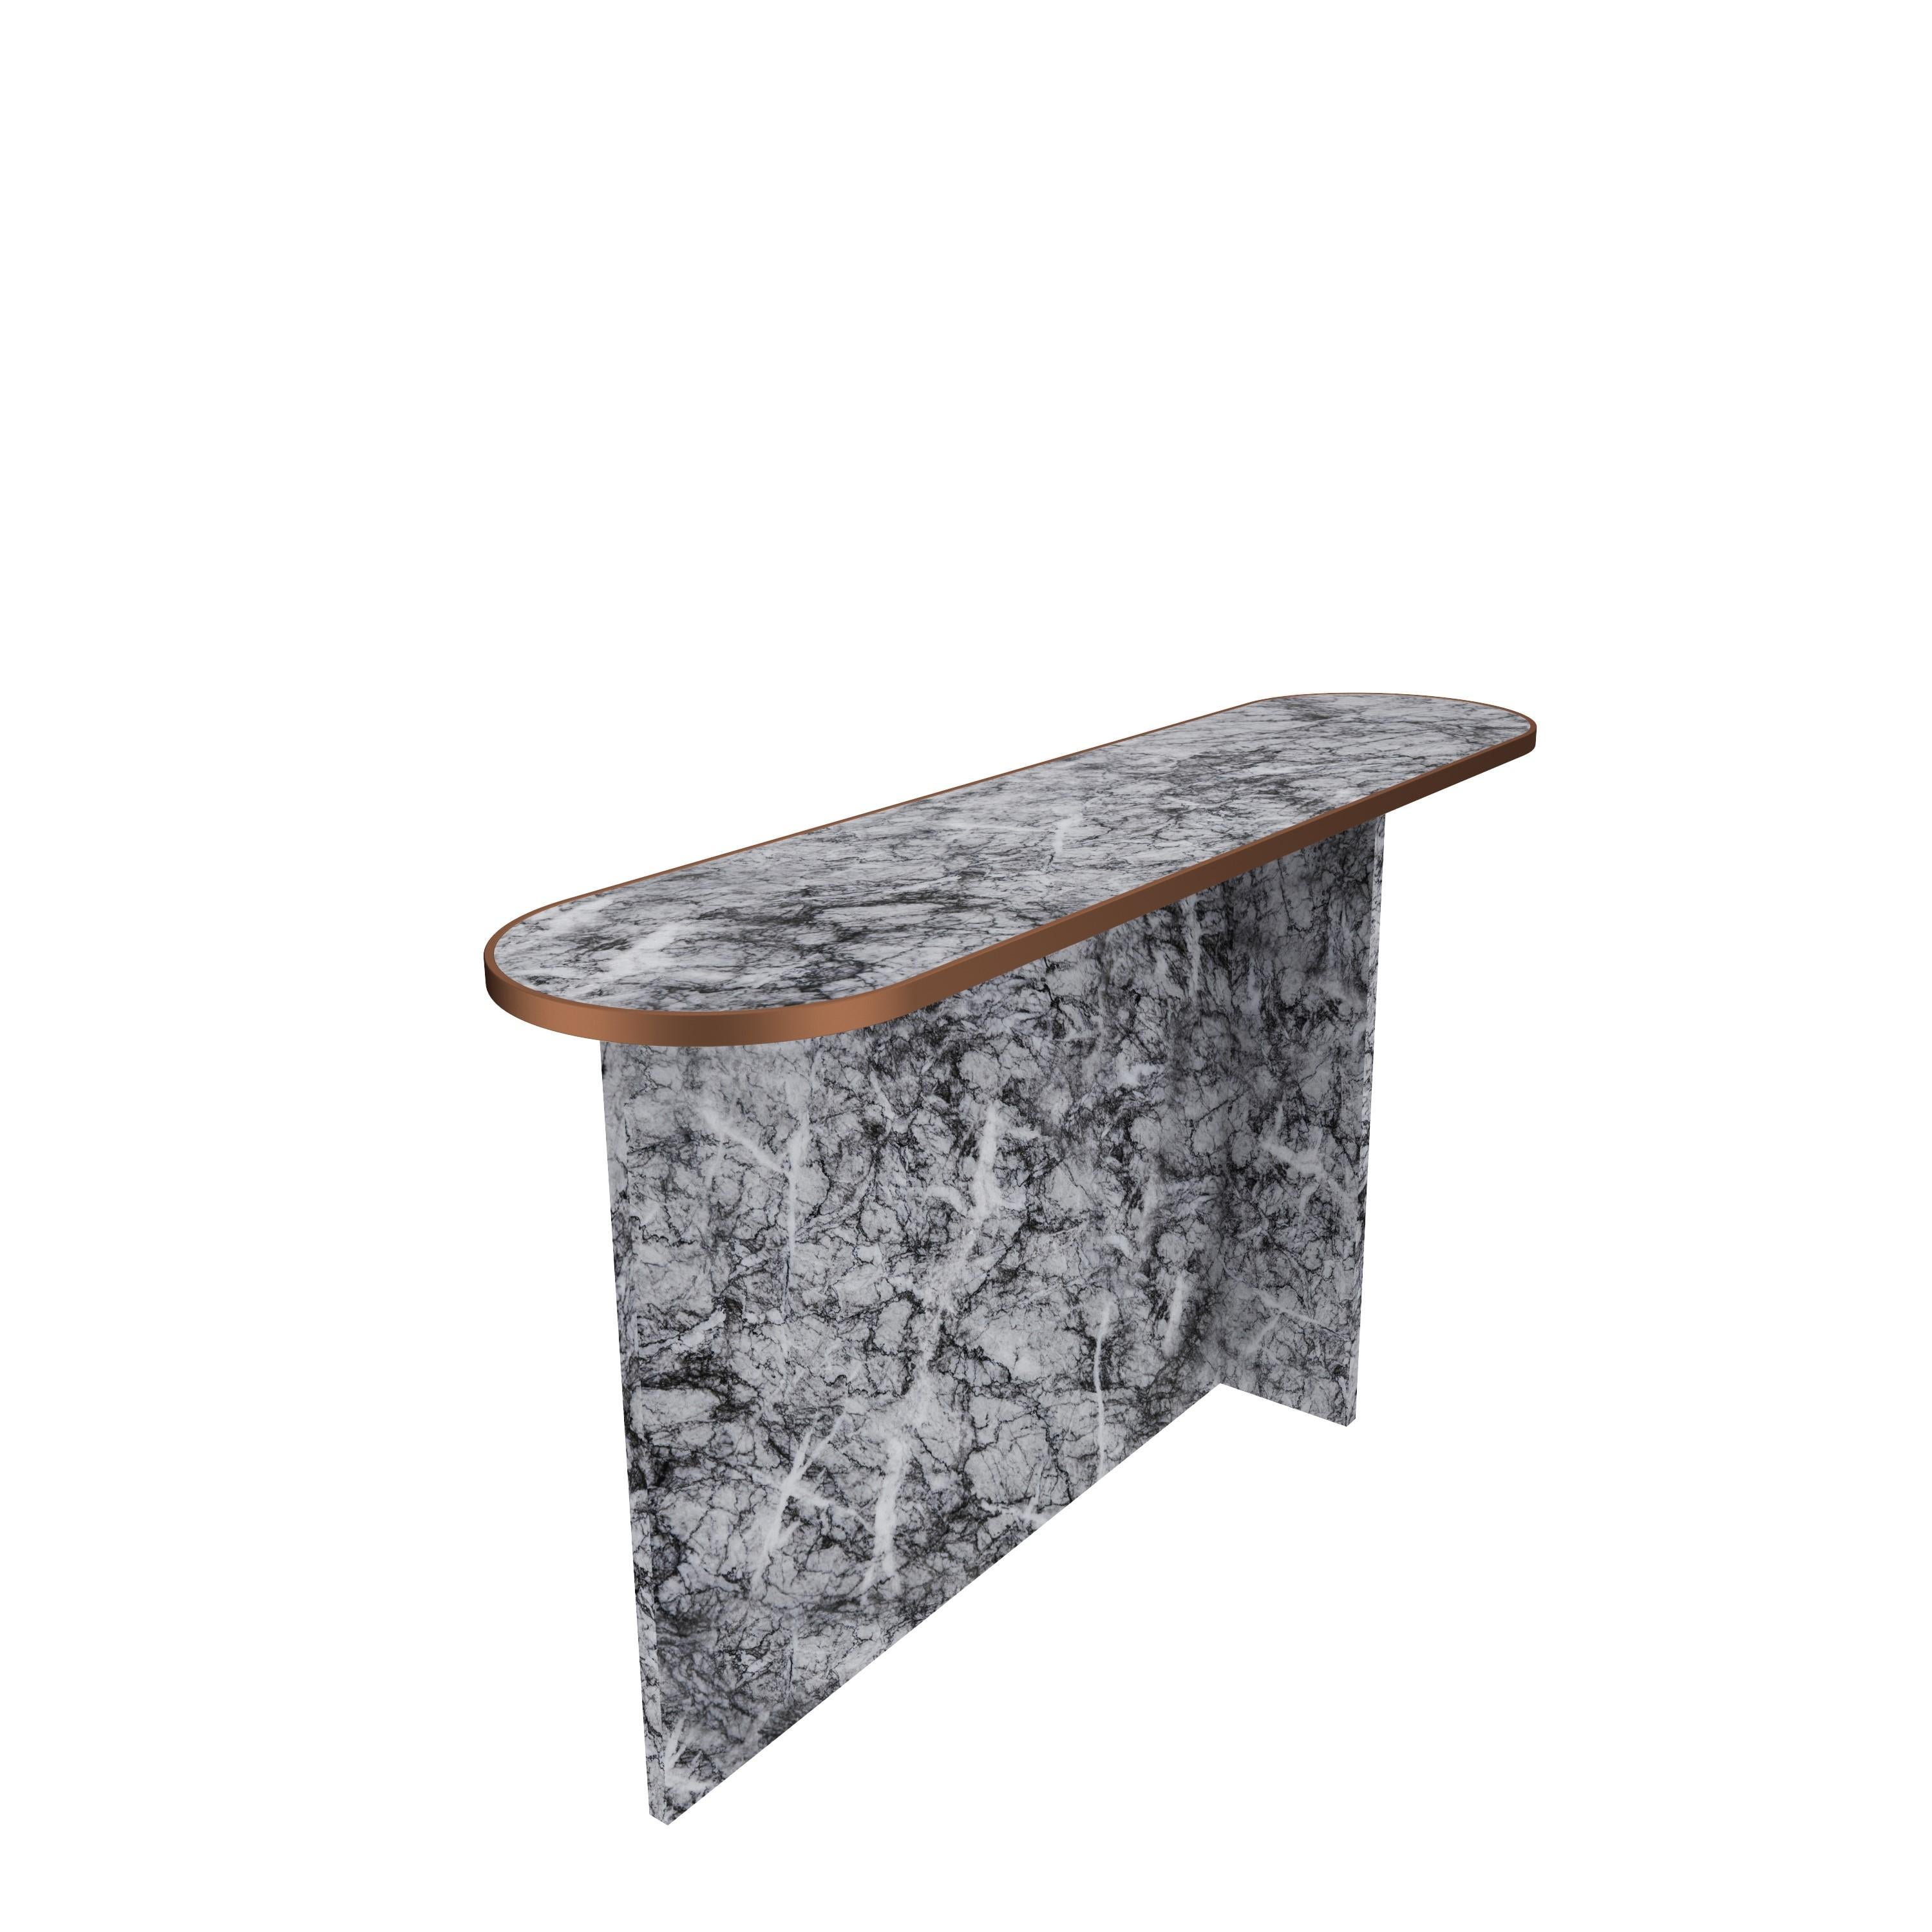 Scandinavian Modern NORDST T-Large Side Table, Italian White Mountain Marble, Danish Modern Design For Sale